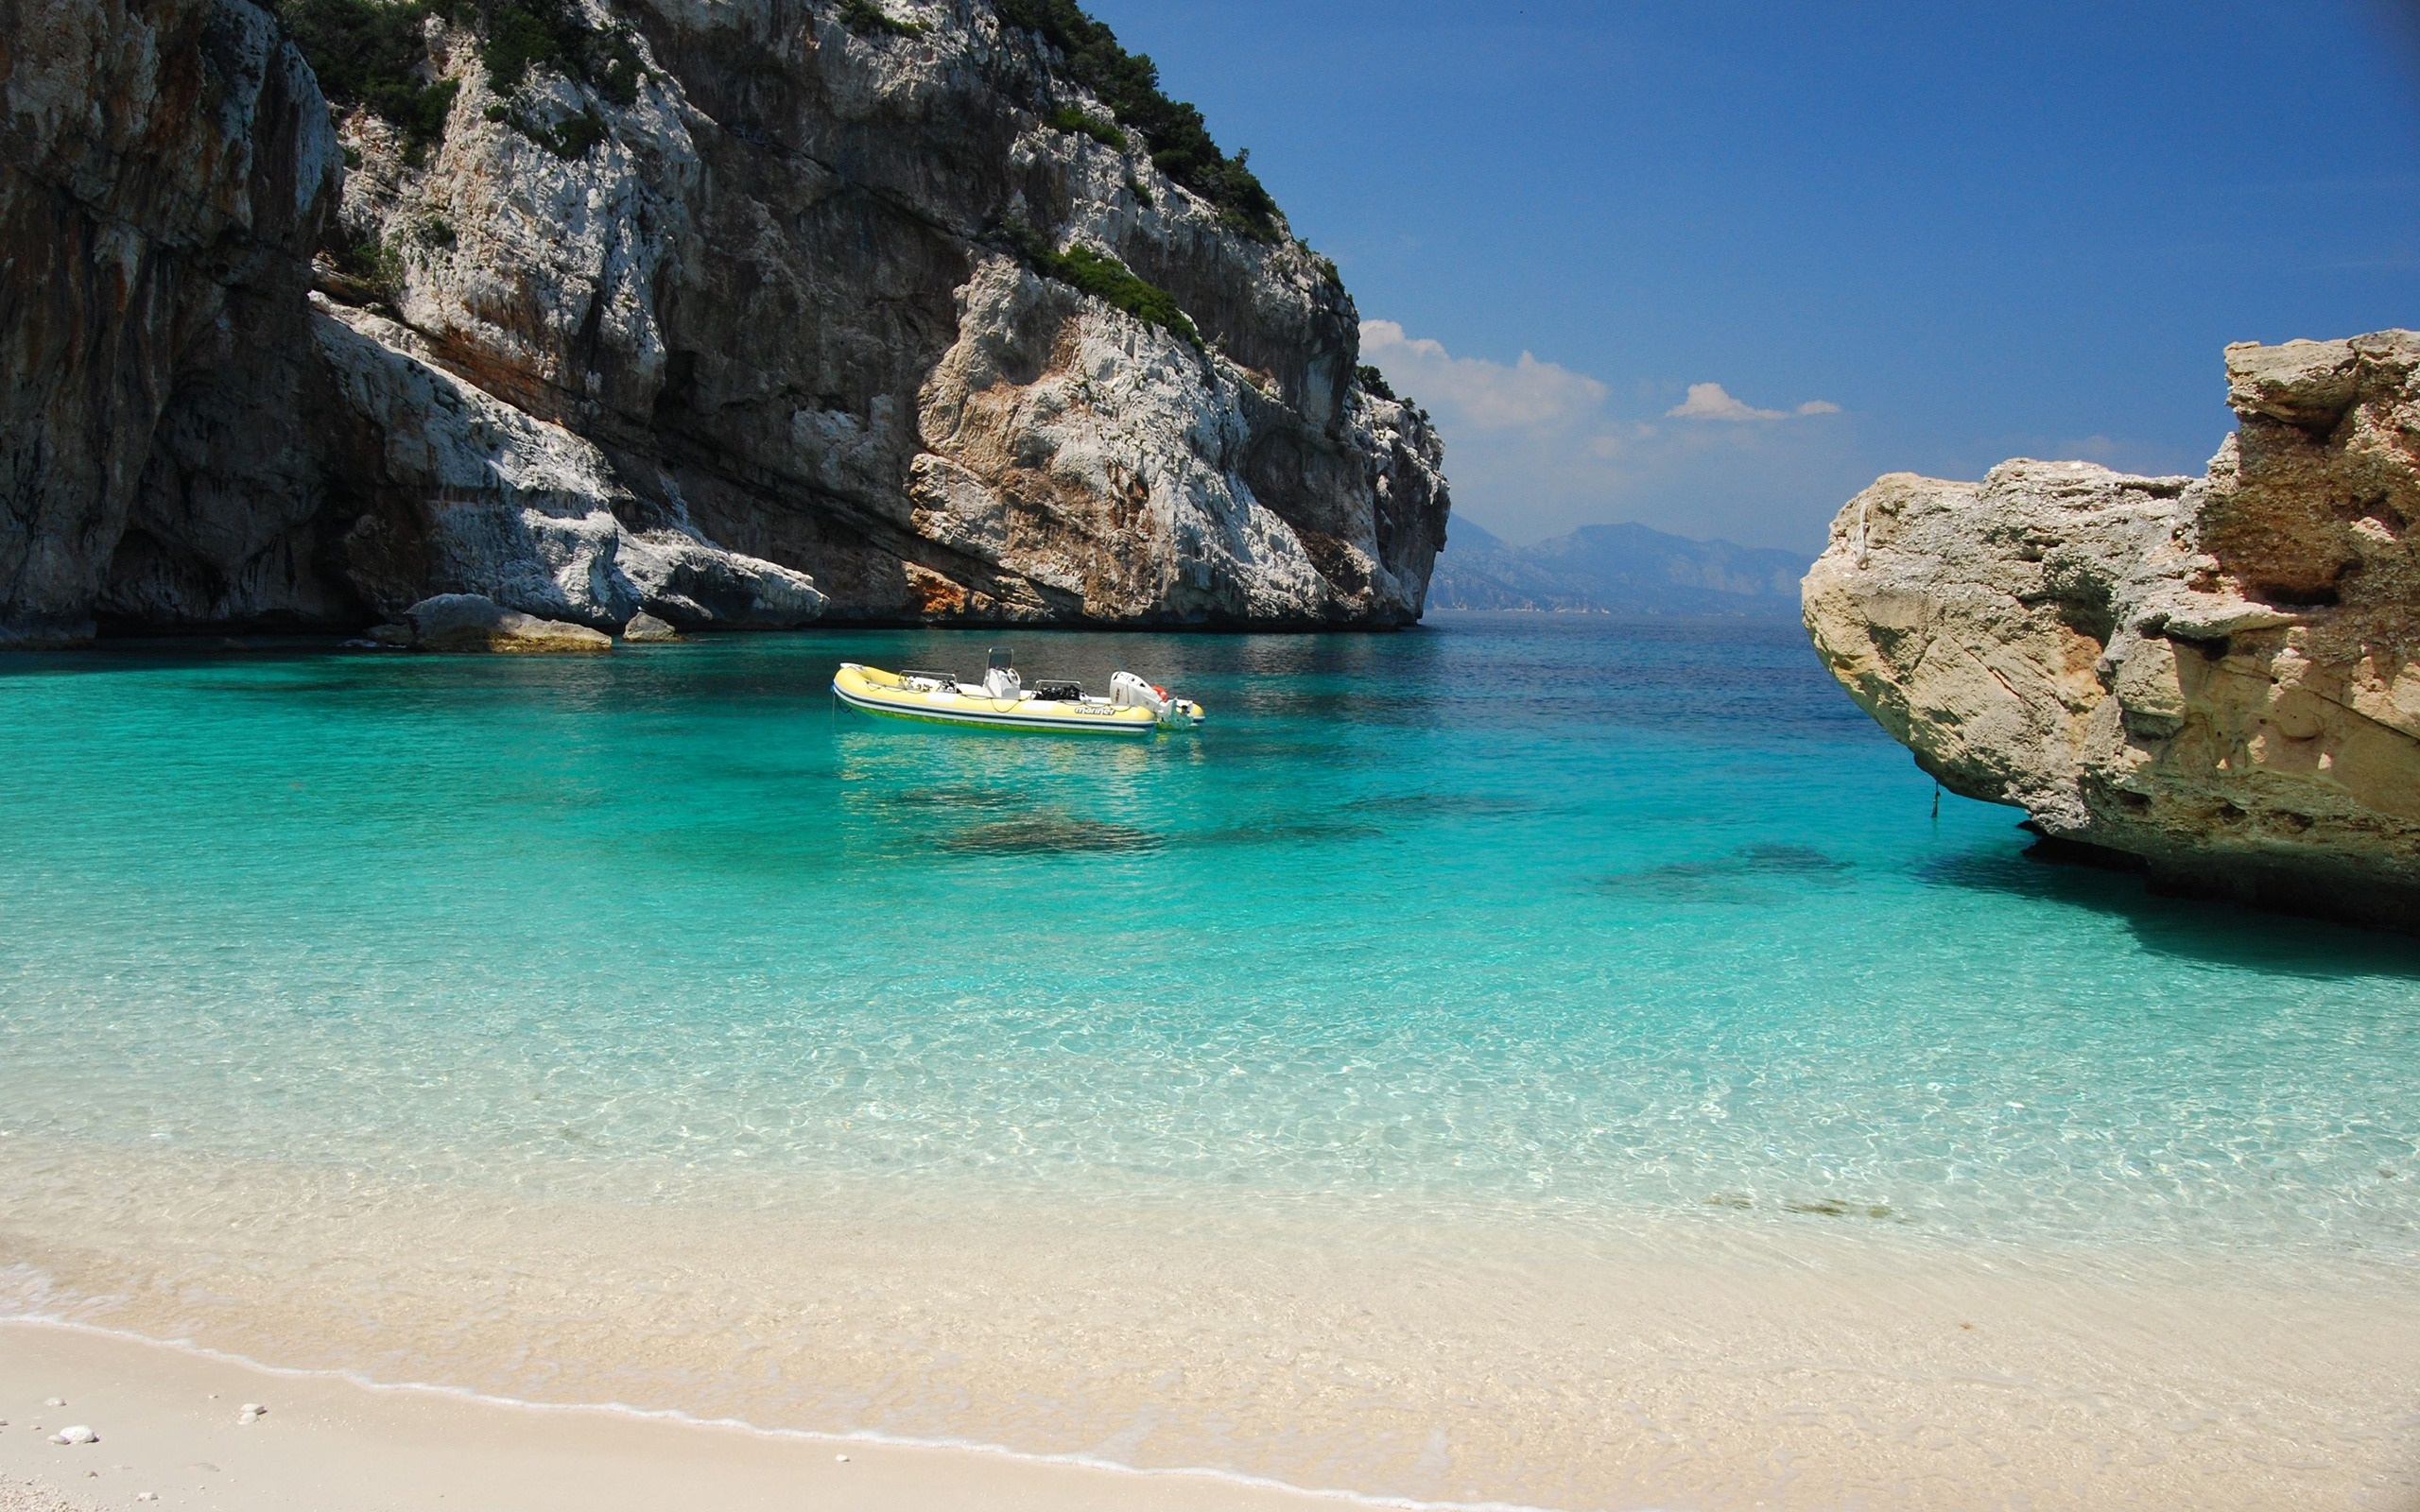 Bay parking for yachts, White yacht in Sardinia, Porto Cervo, Sardinian luxury, 2560x1600 HD Desktop